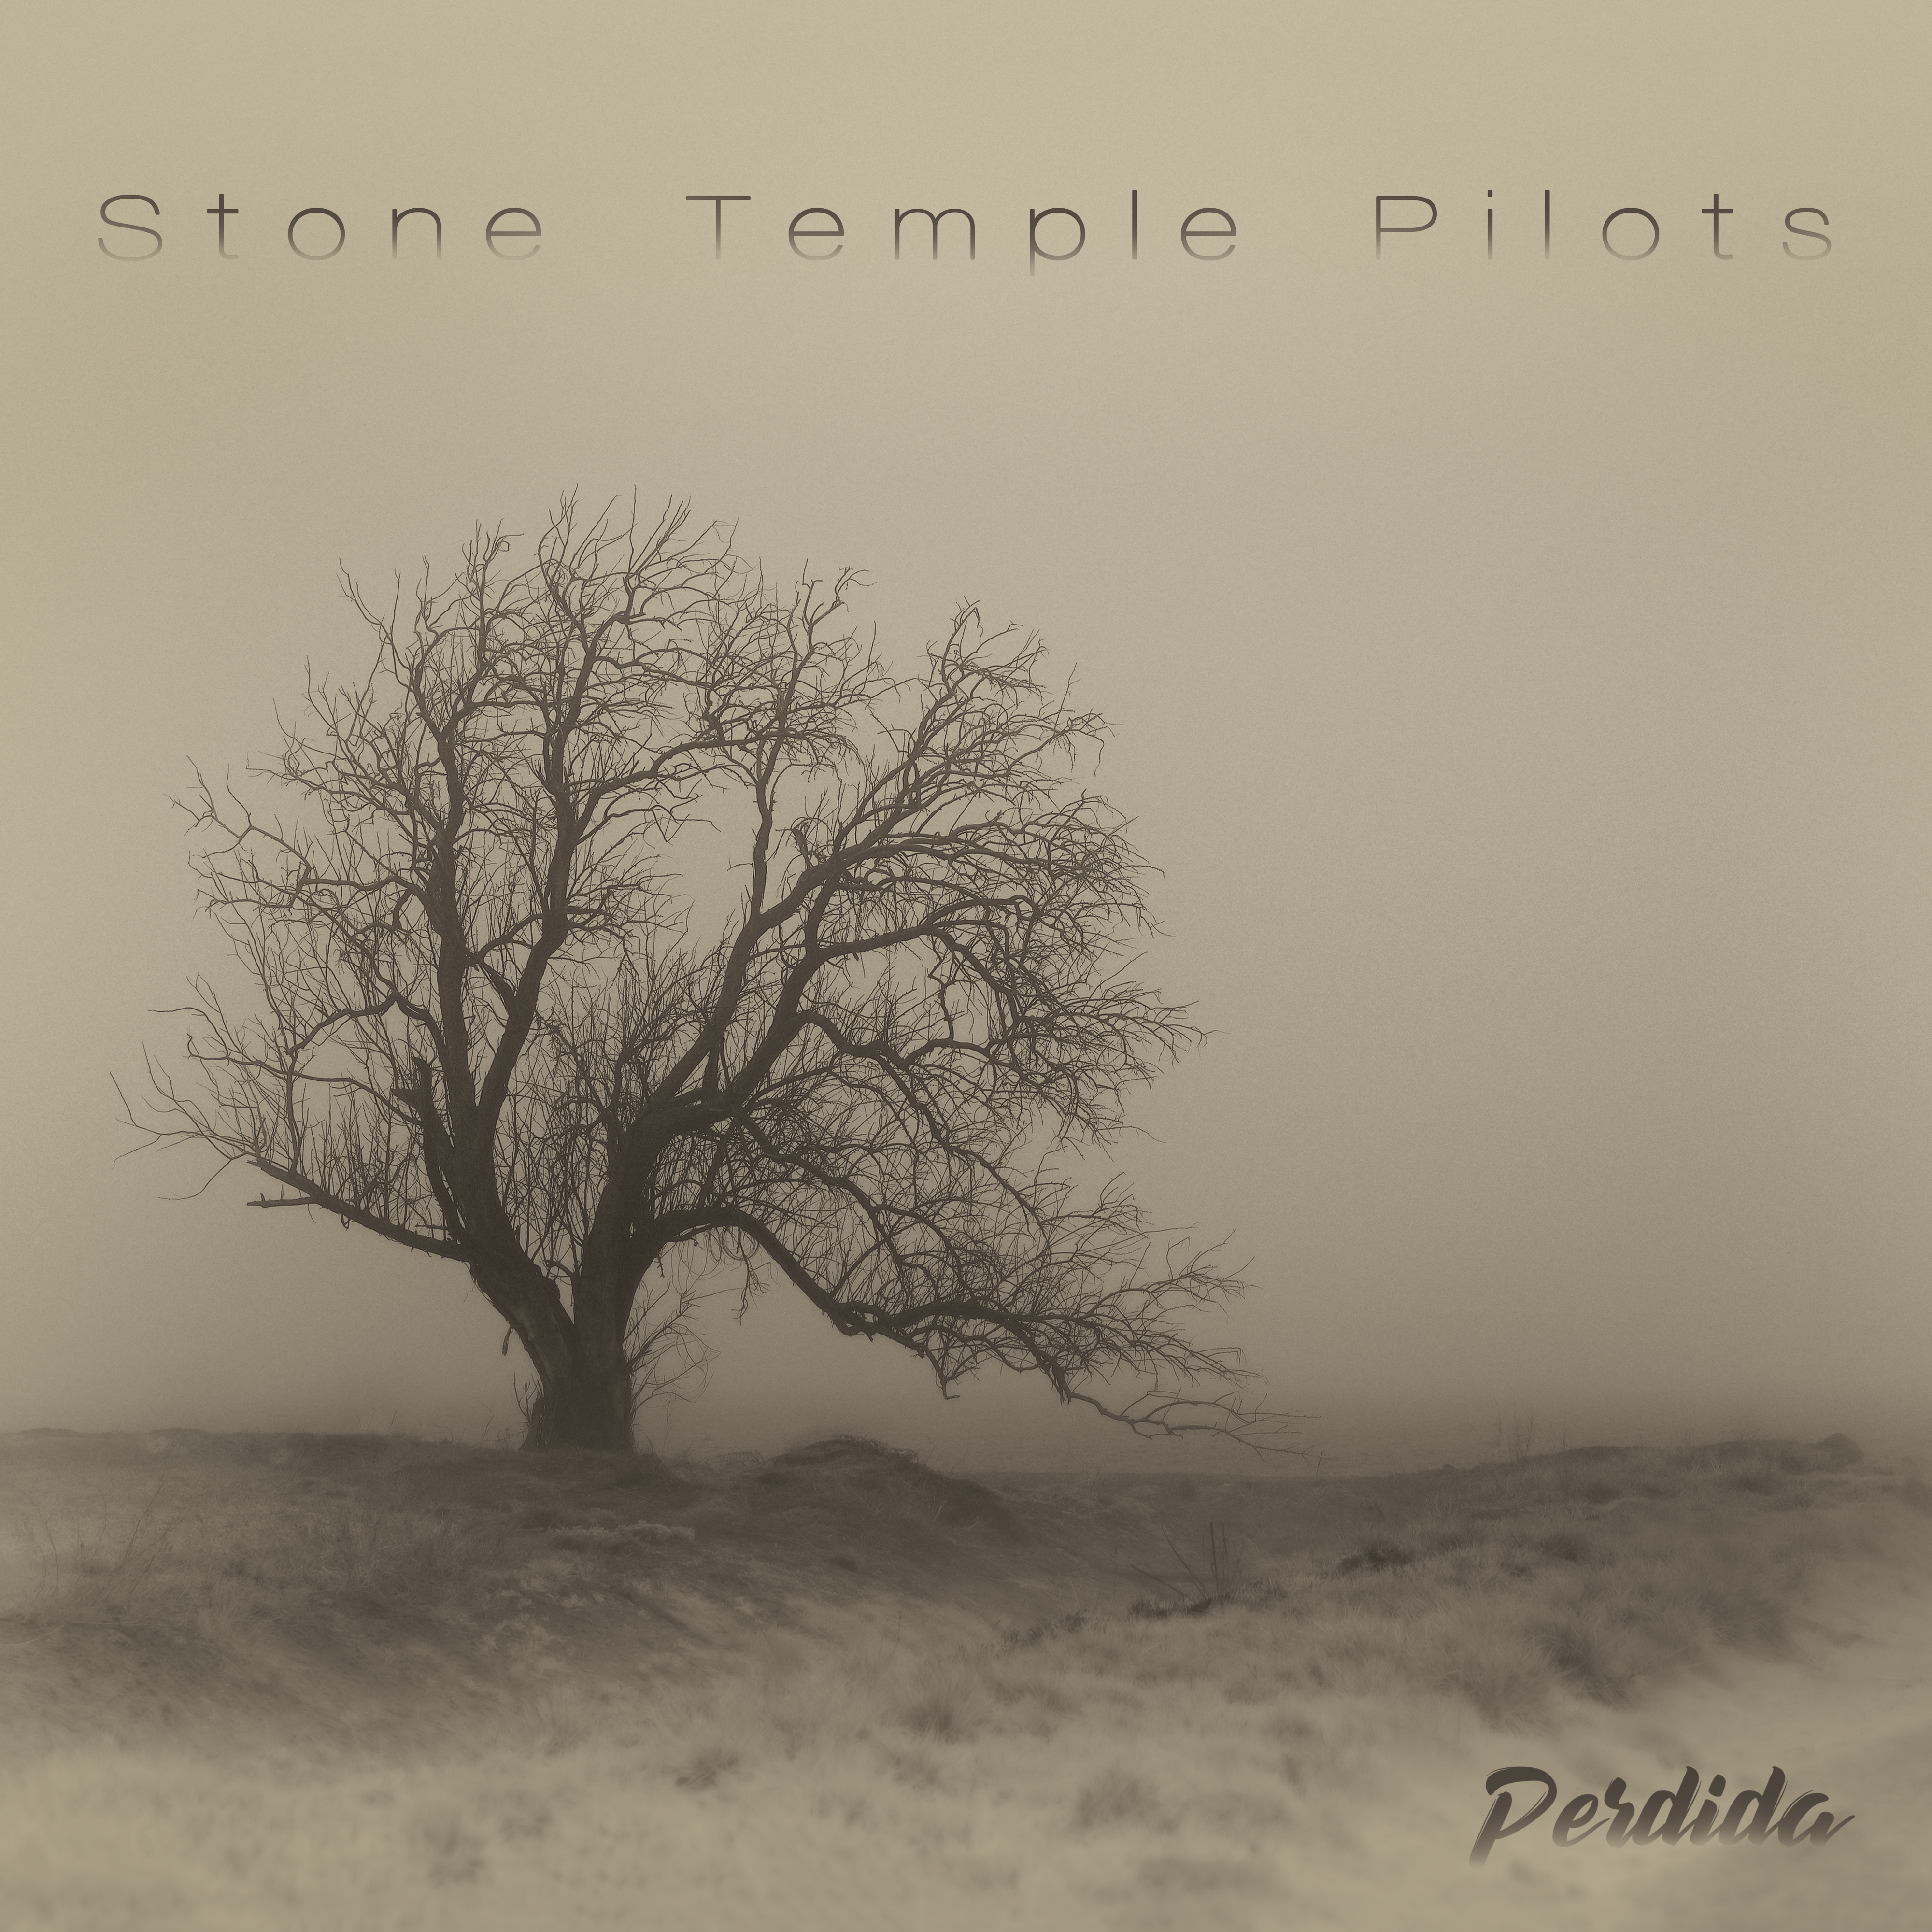 Stone Temple Pilots Perdida album cover